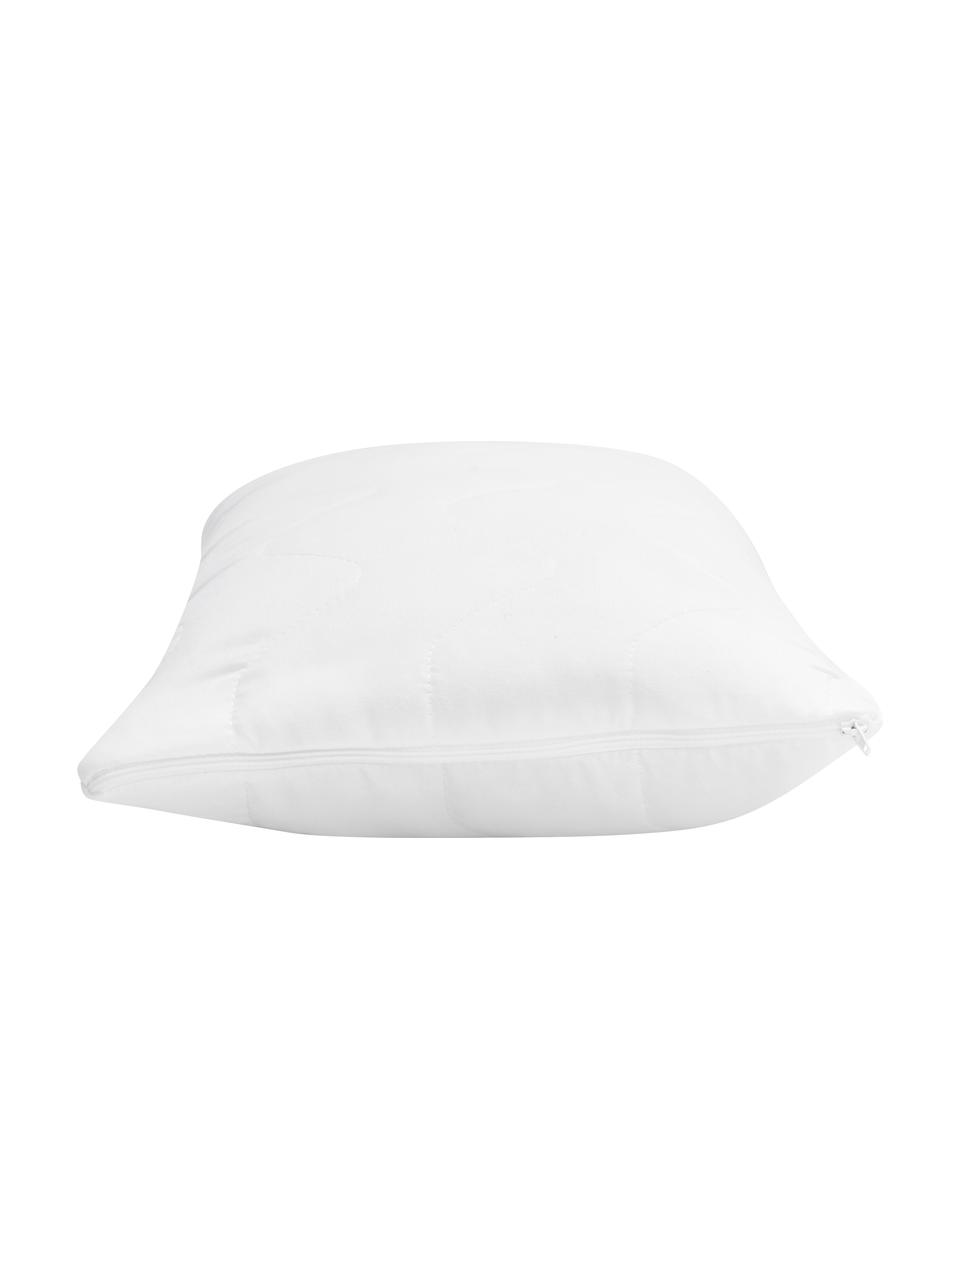 Wkład premium do poduszki Sia, 30x50, Biały, S 30 x D 50 cm